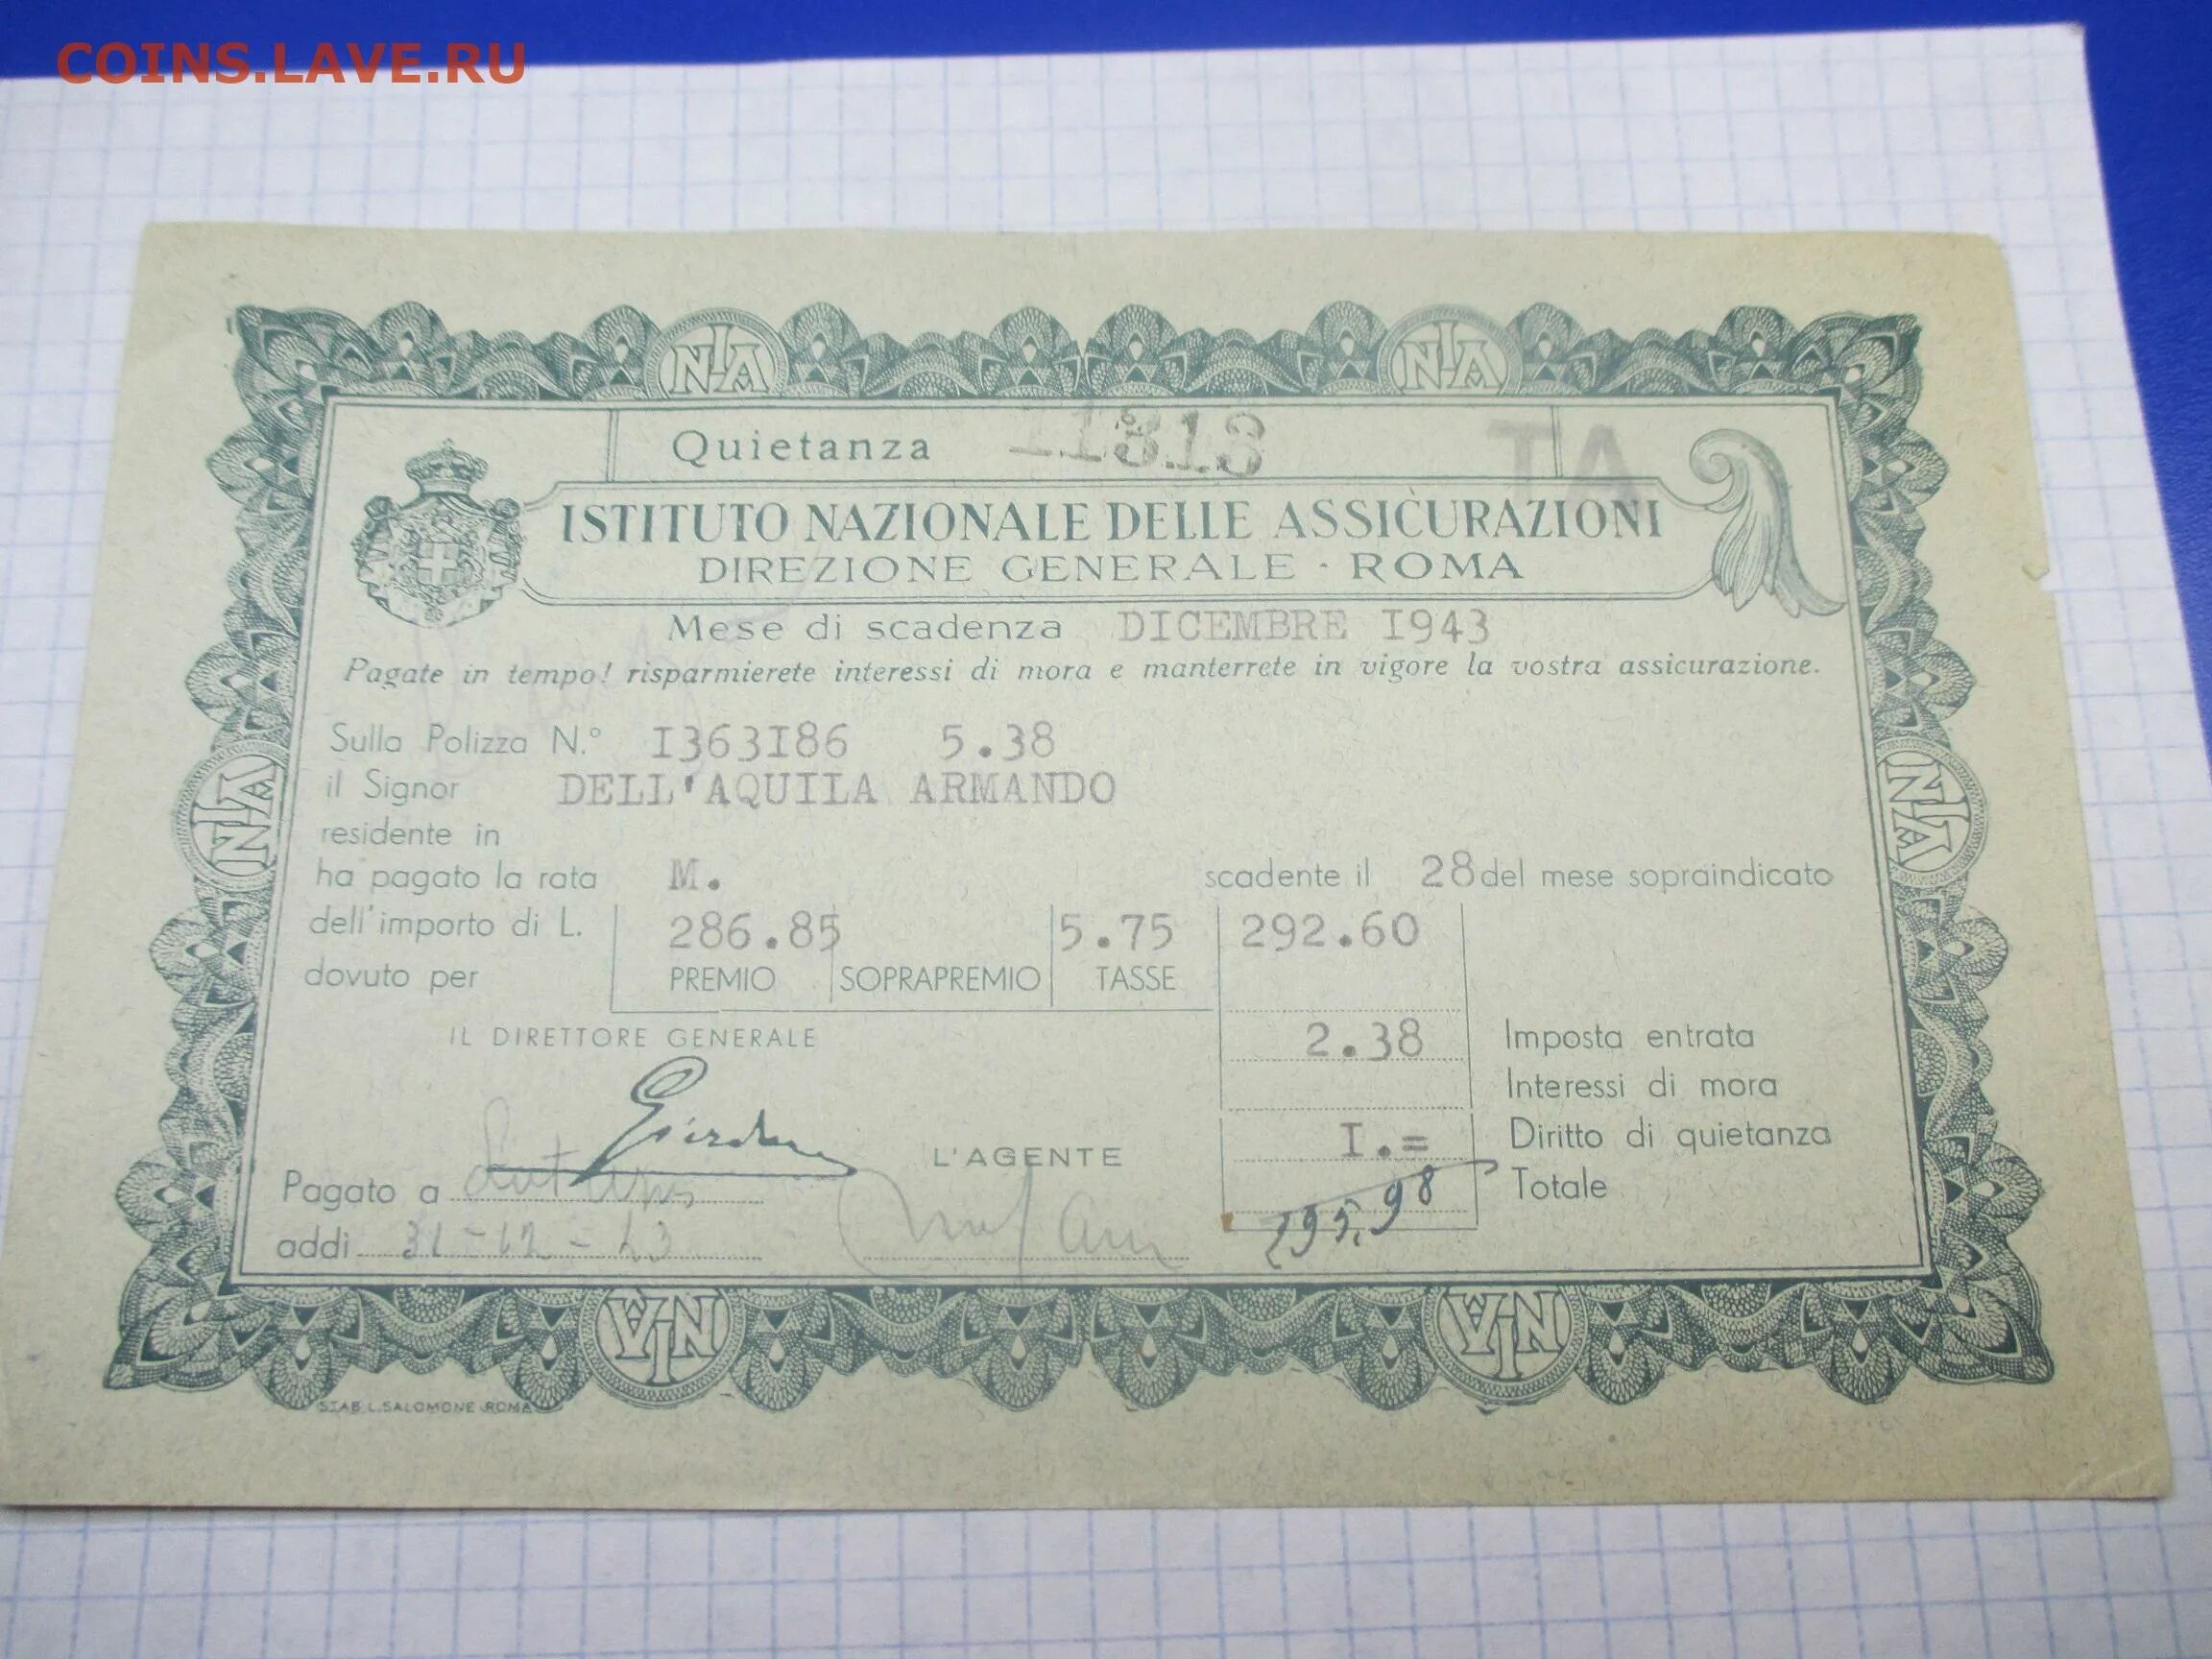 Итальянский сертификат института.